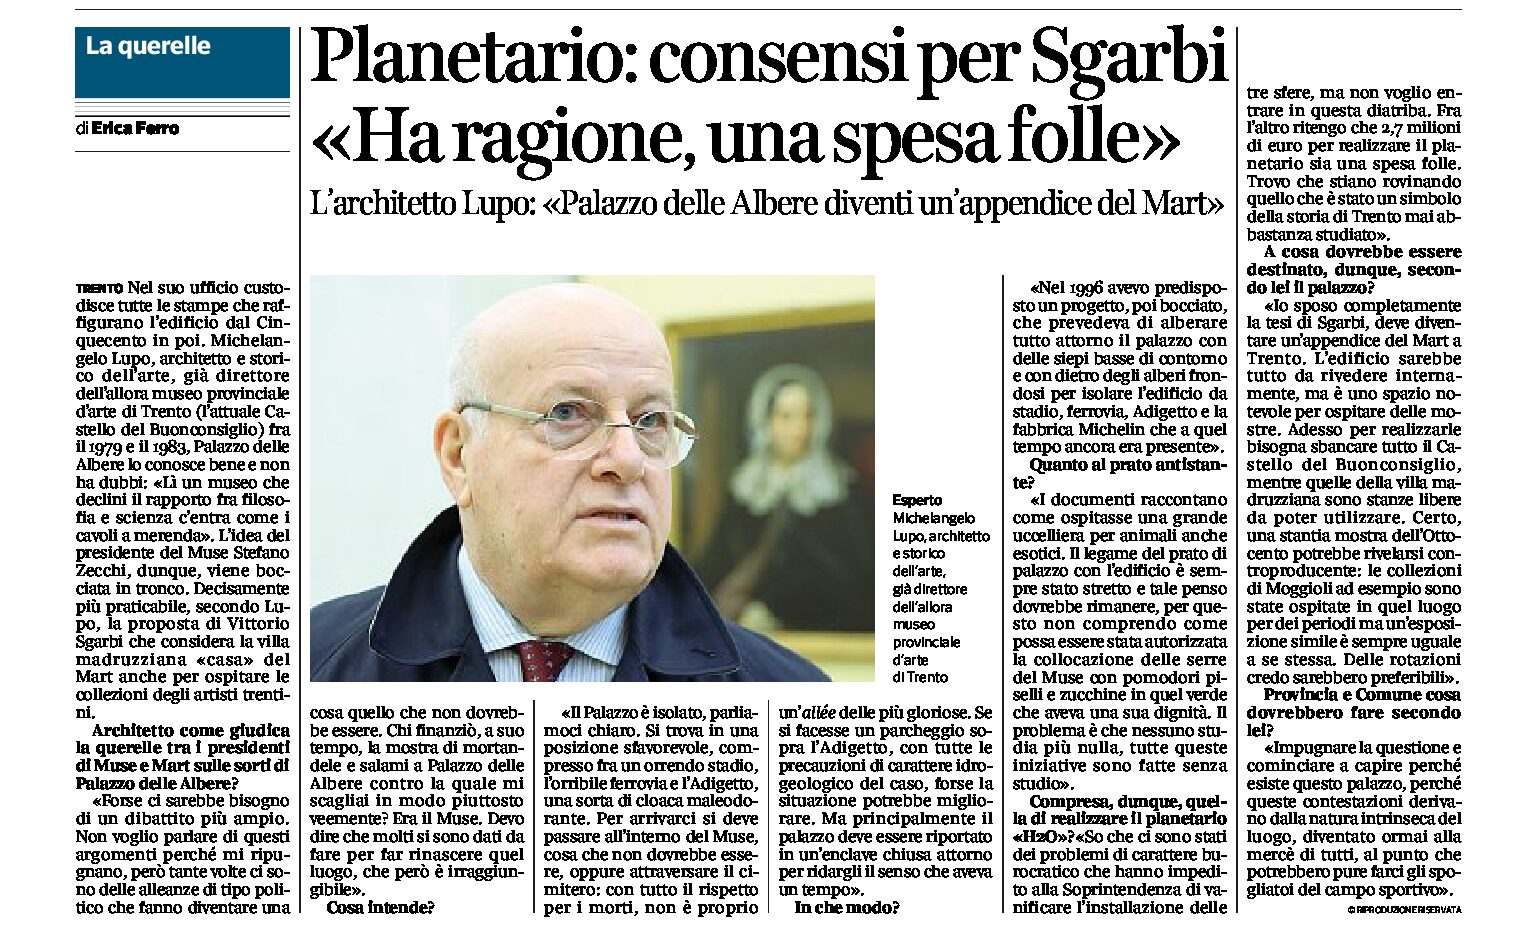 Trento, Planetario: consensi per Sgarbi. L’architetto Lupo “ha ragione, una spesa folle”